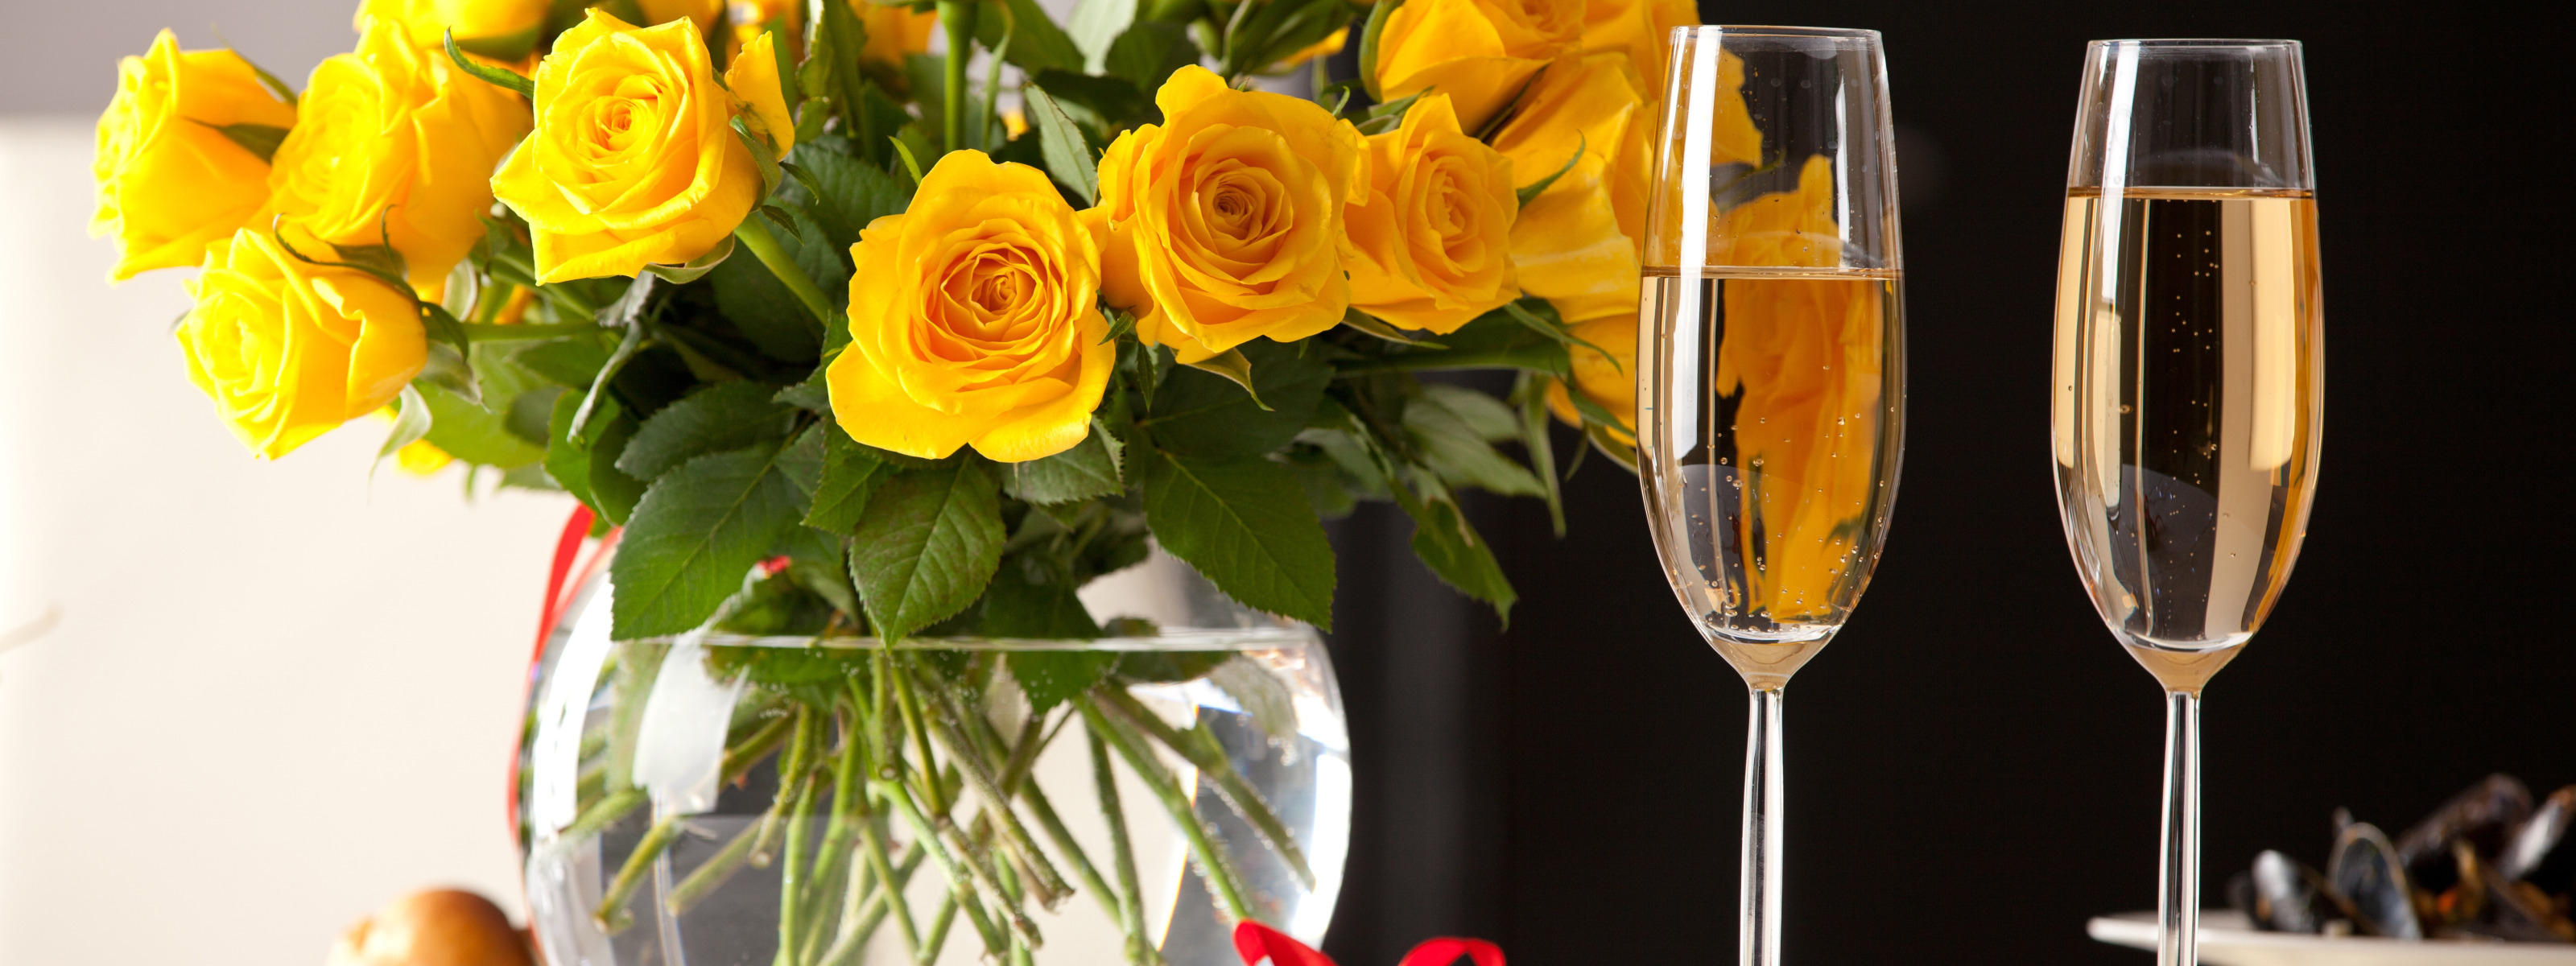 Шампанское и розы 31 экстра на русском. Цветы в бокале. Бокалы с шампанским. Цветы и шампанское. Красивые цветы в бокале.